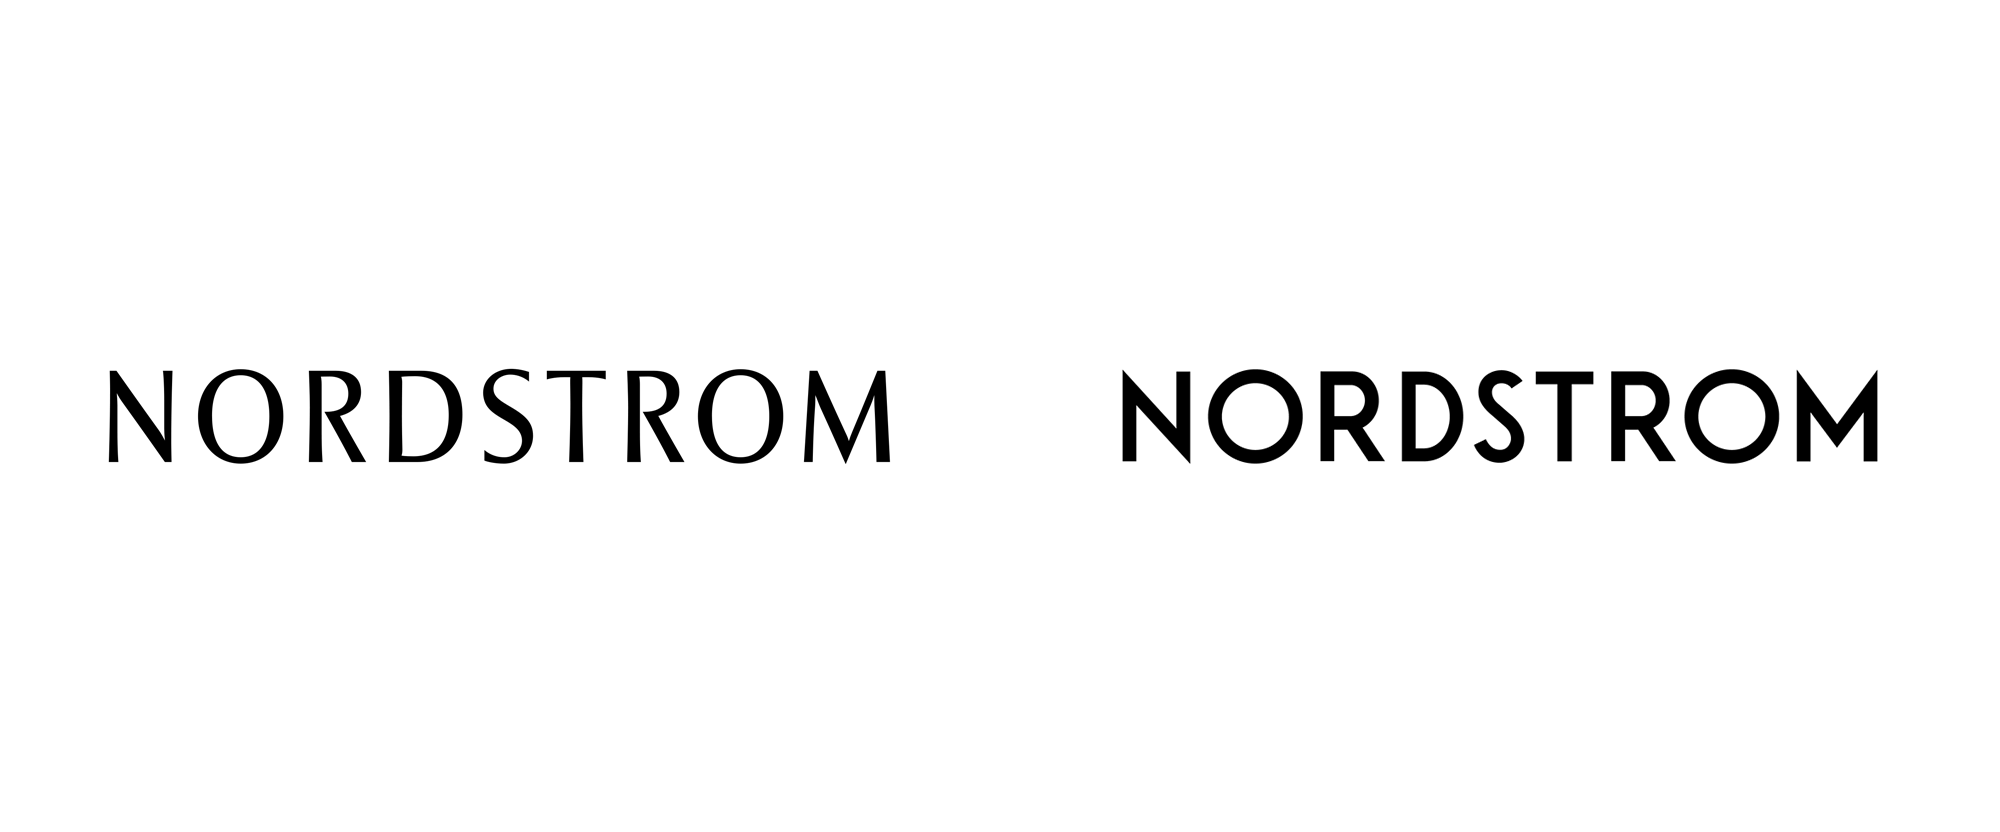 Brand New: New Logo for Nordstrom